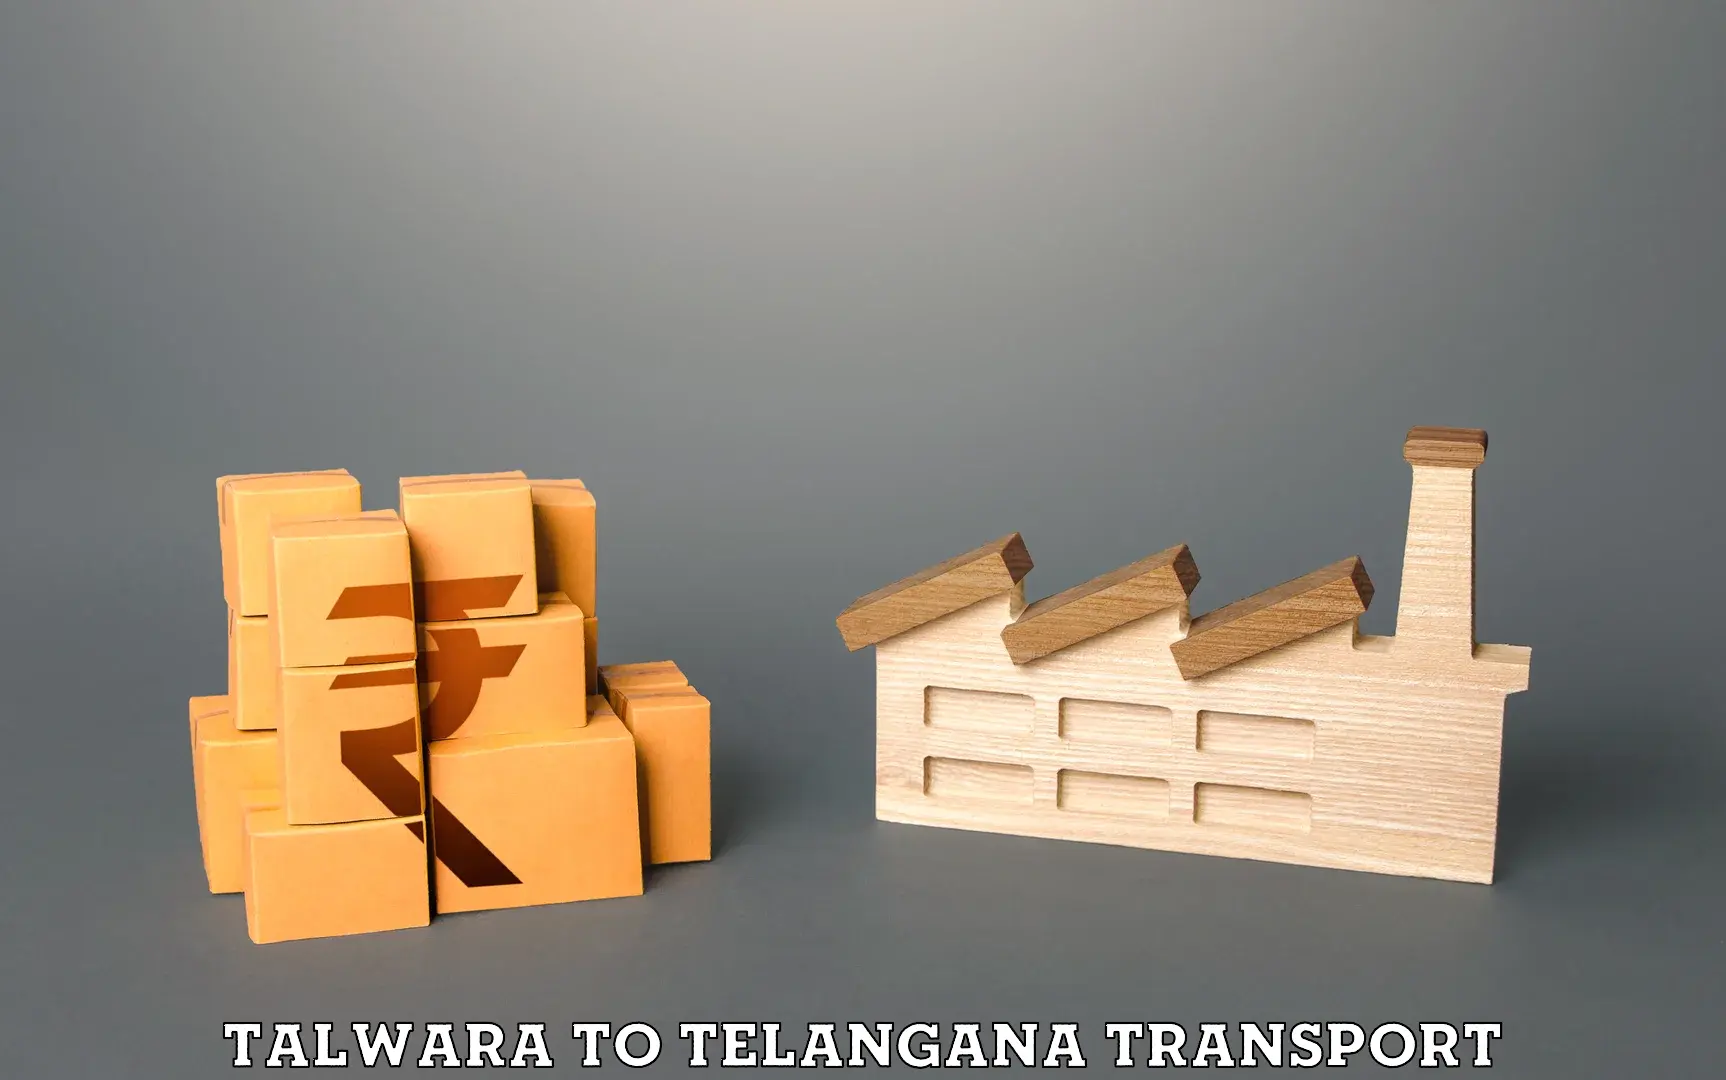 Cycle transportation service Talwara to Vemulawada